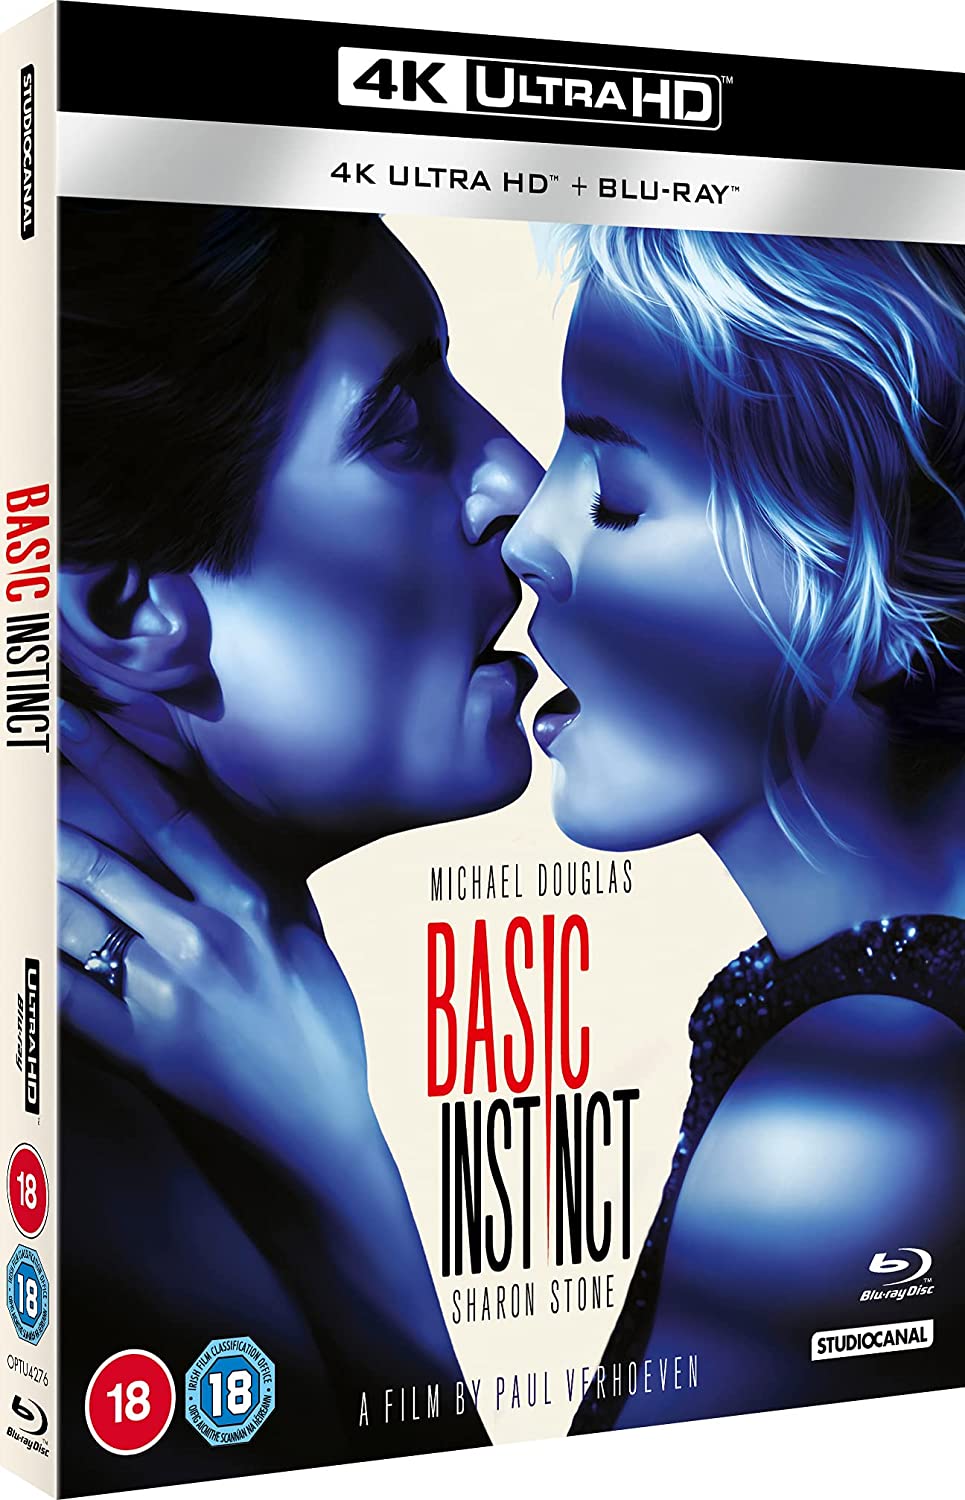 Basic Instinct (new restoration) 4K UHD - Thriller/Mystery [Blu-ray]